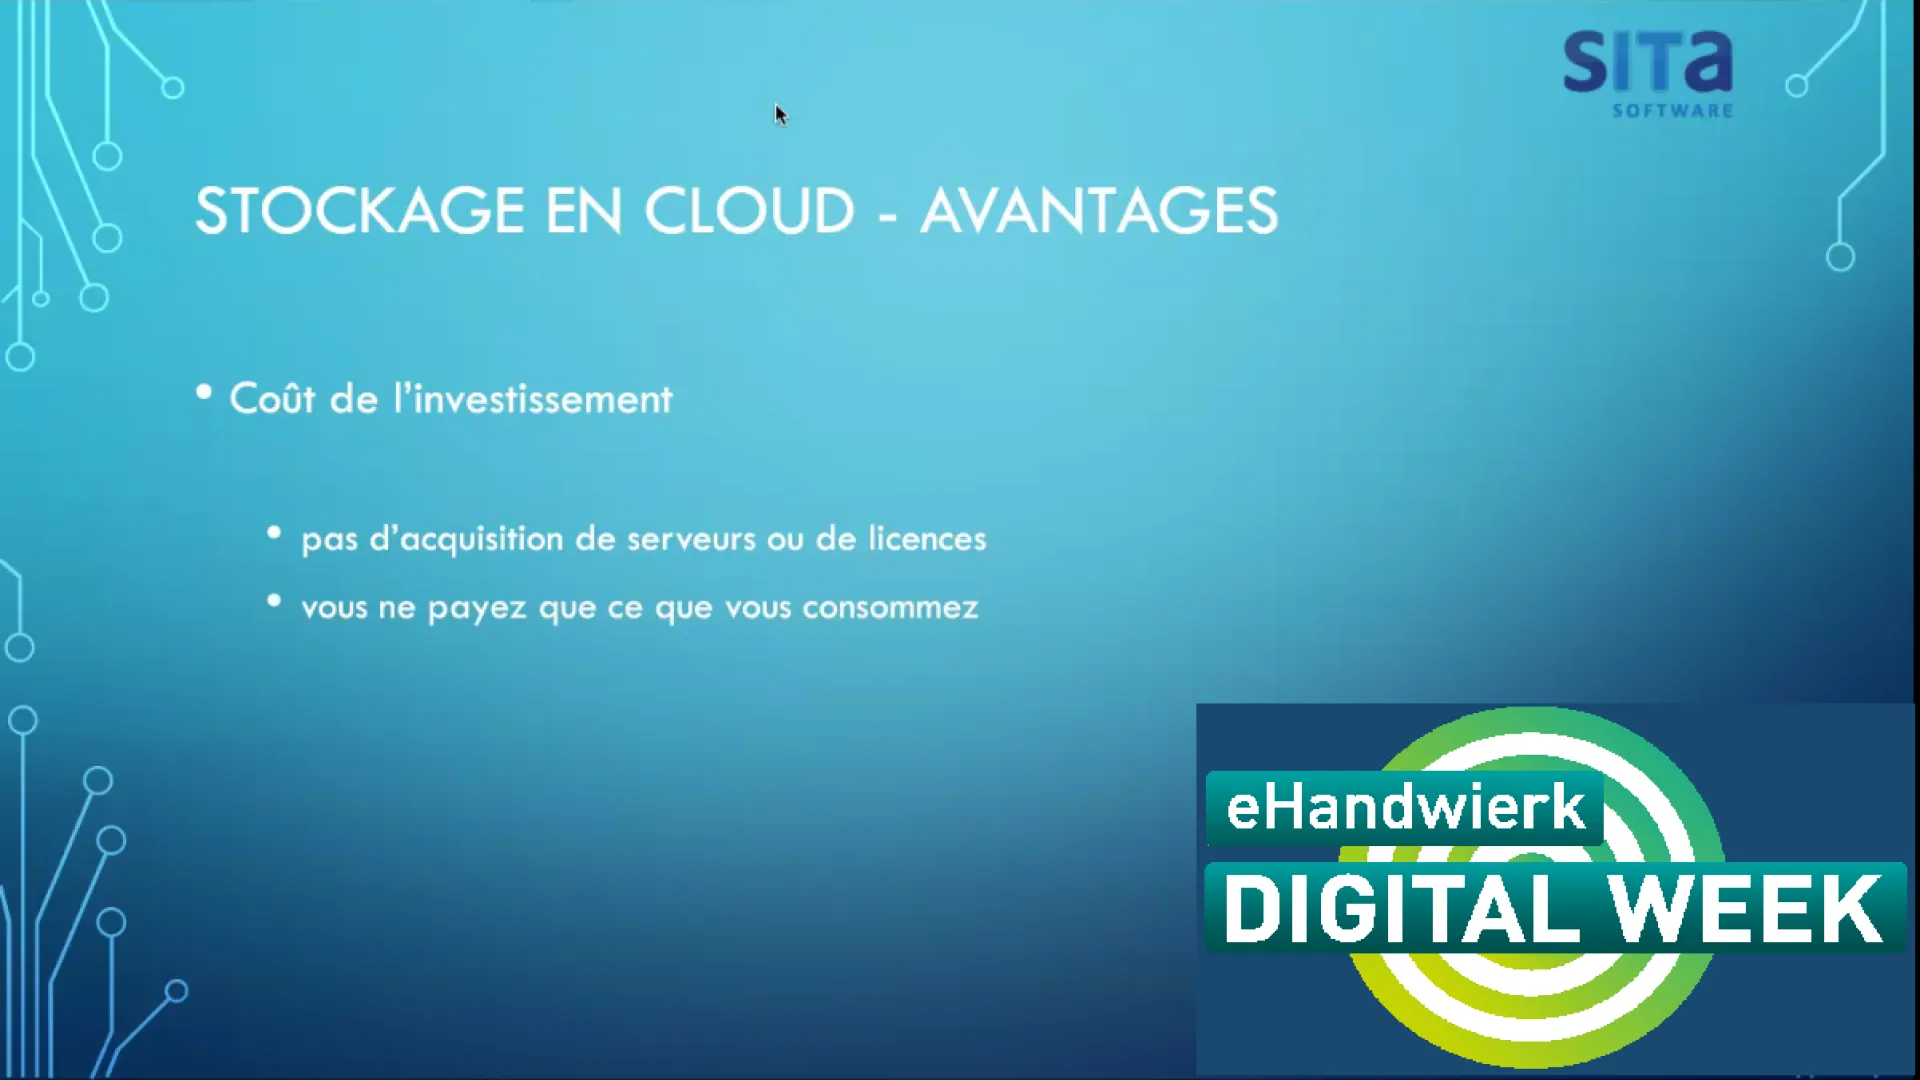 eHandwierk Webinaire: Le stockage en cloud